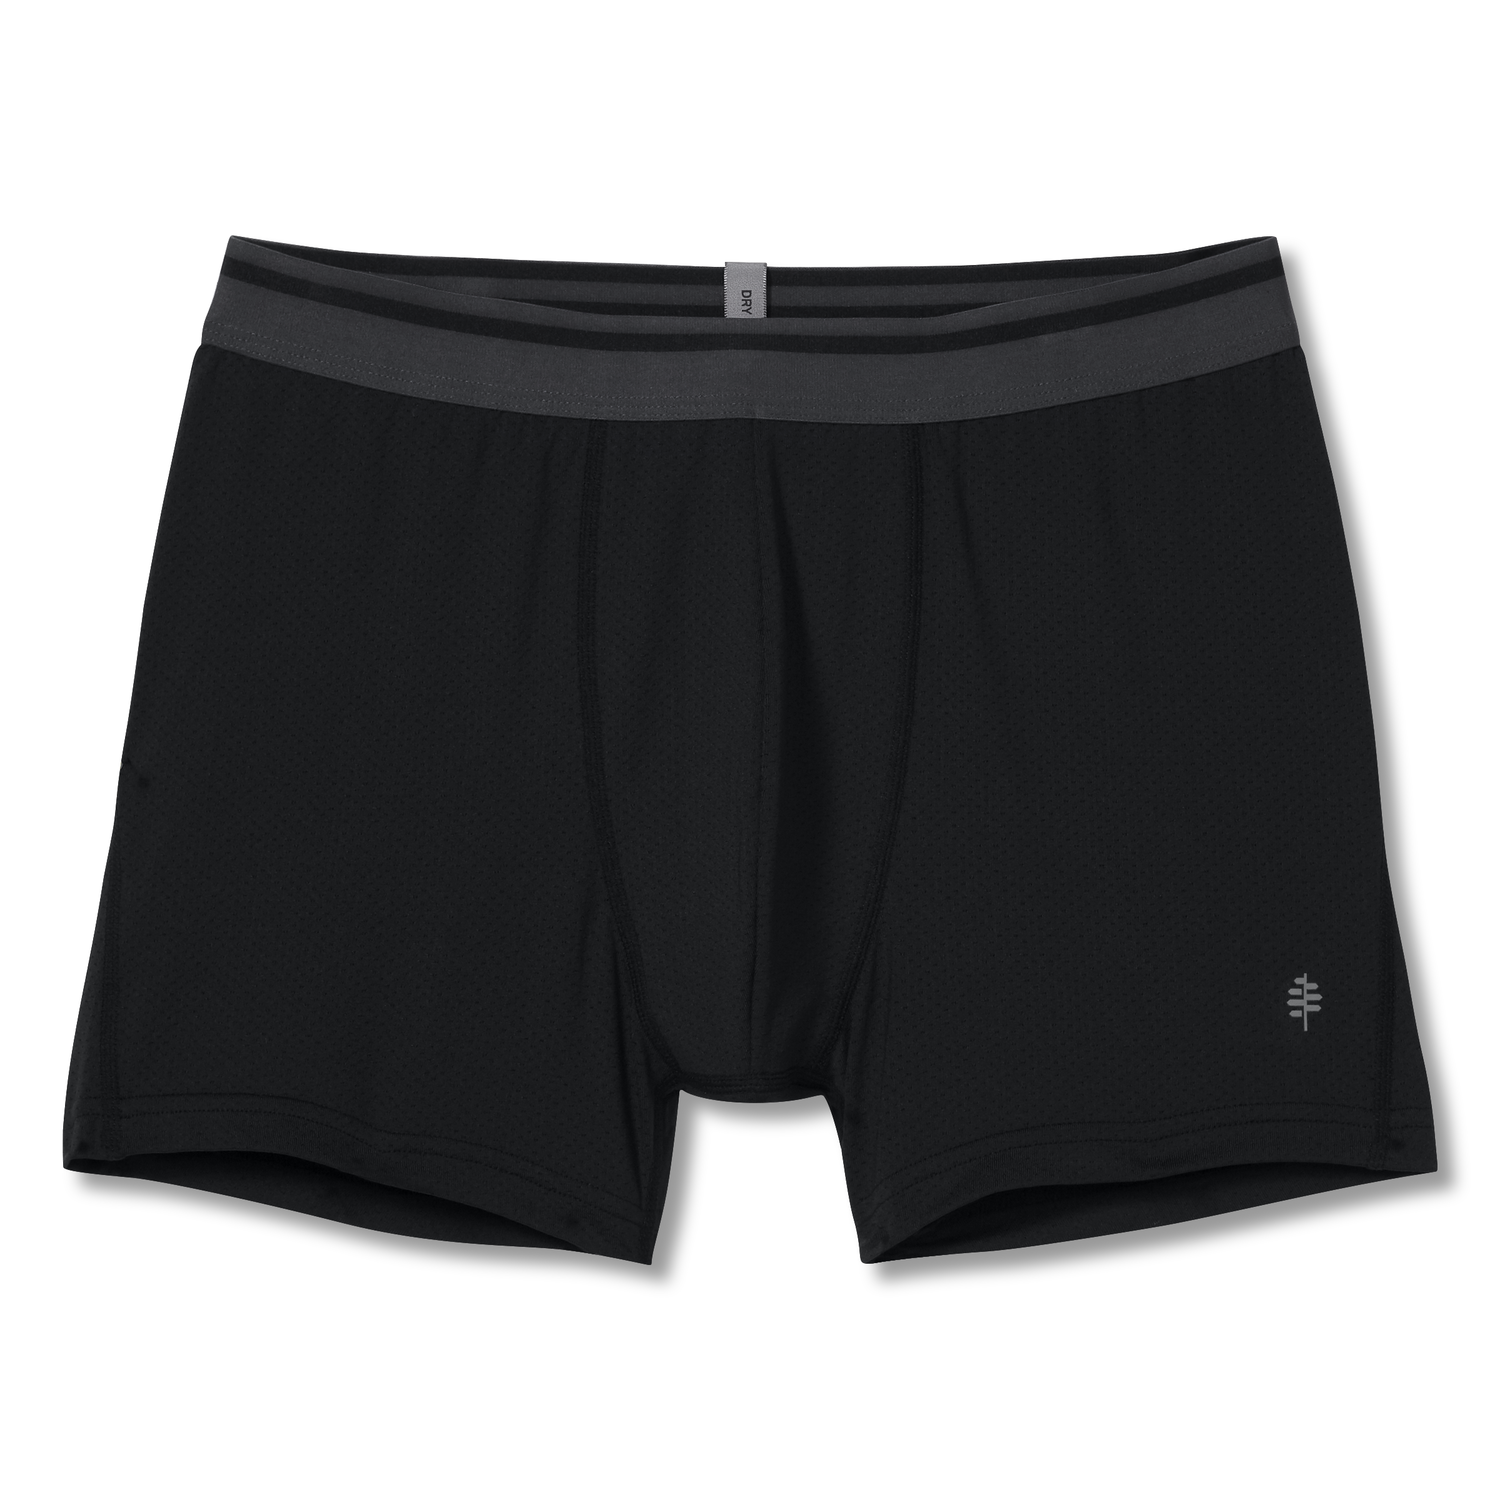 Mens New Balance Dry/Fresh 9-inch - 2 Pack Boxer Brief Underwear Bottoms